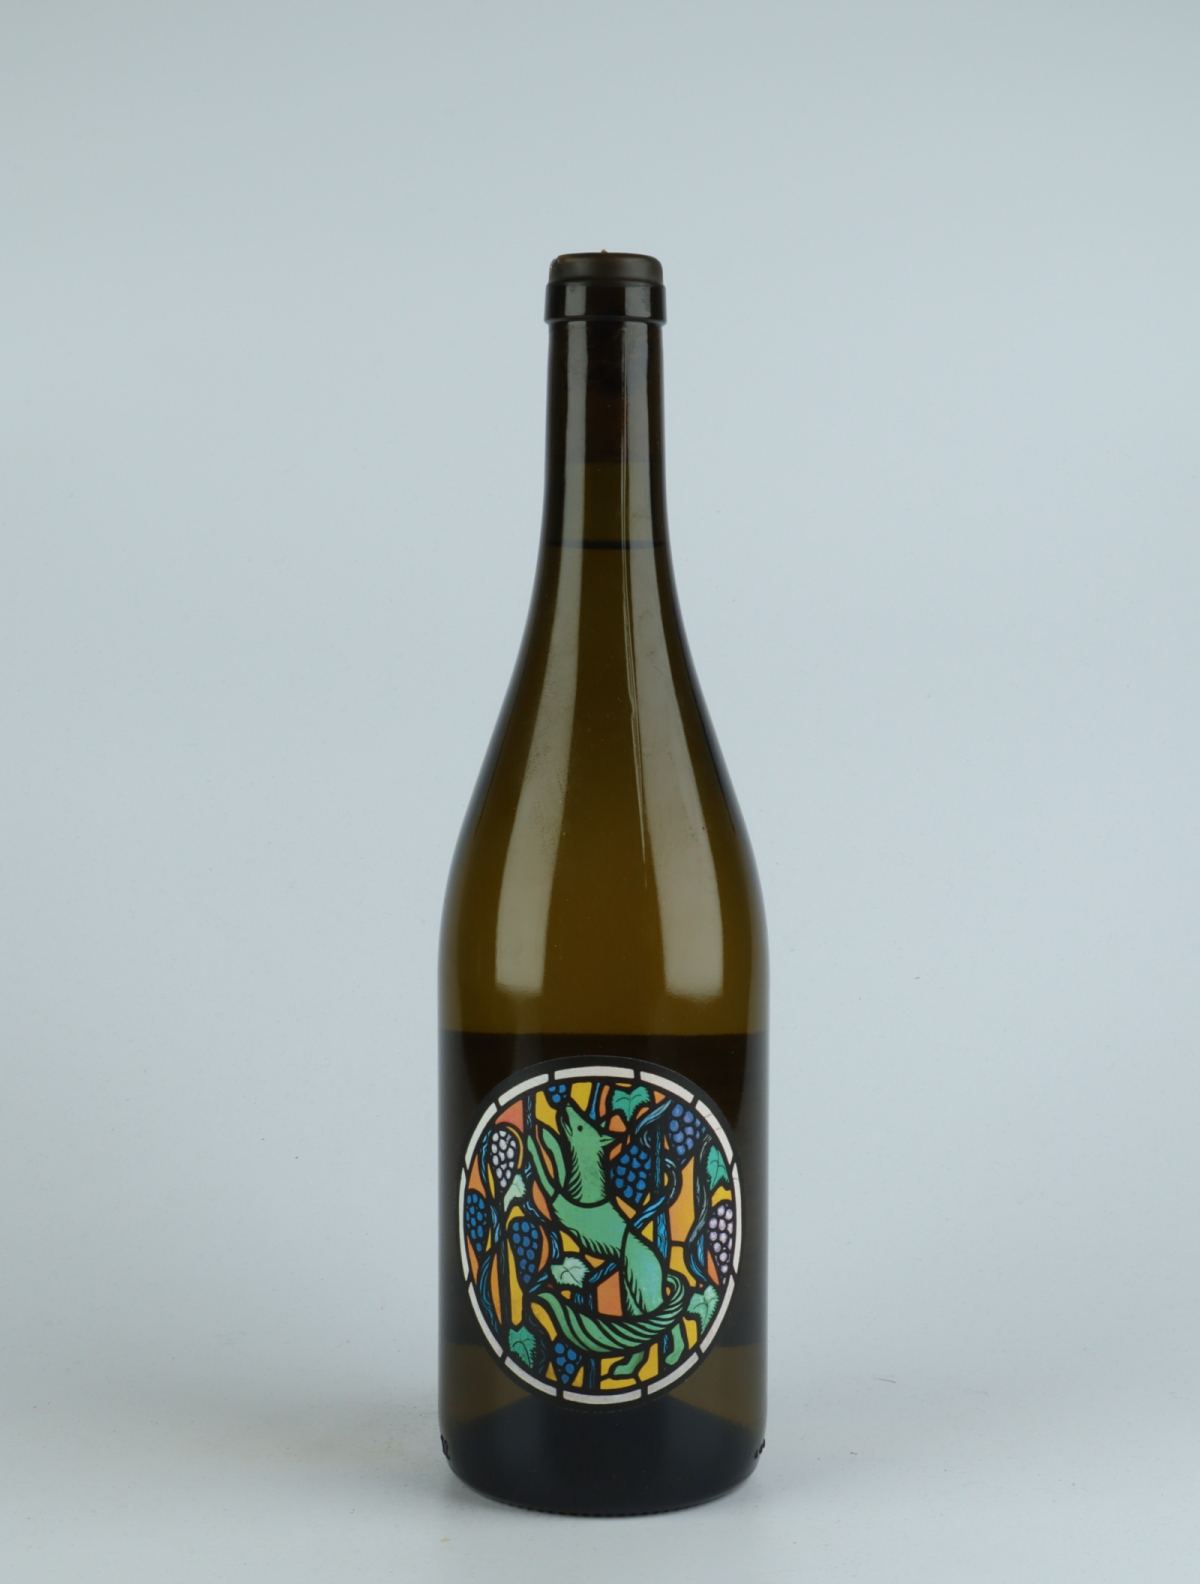 A bottle 2019 Weissburgunder White wine from Julien Renard, Mosel in Germany